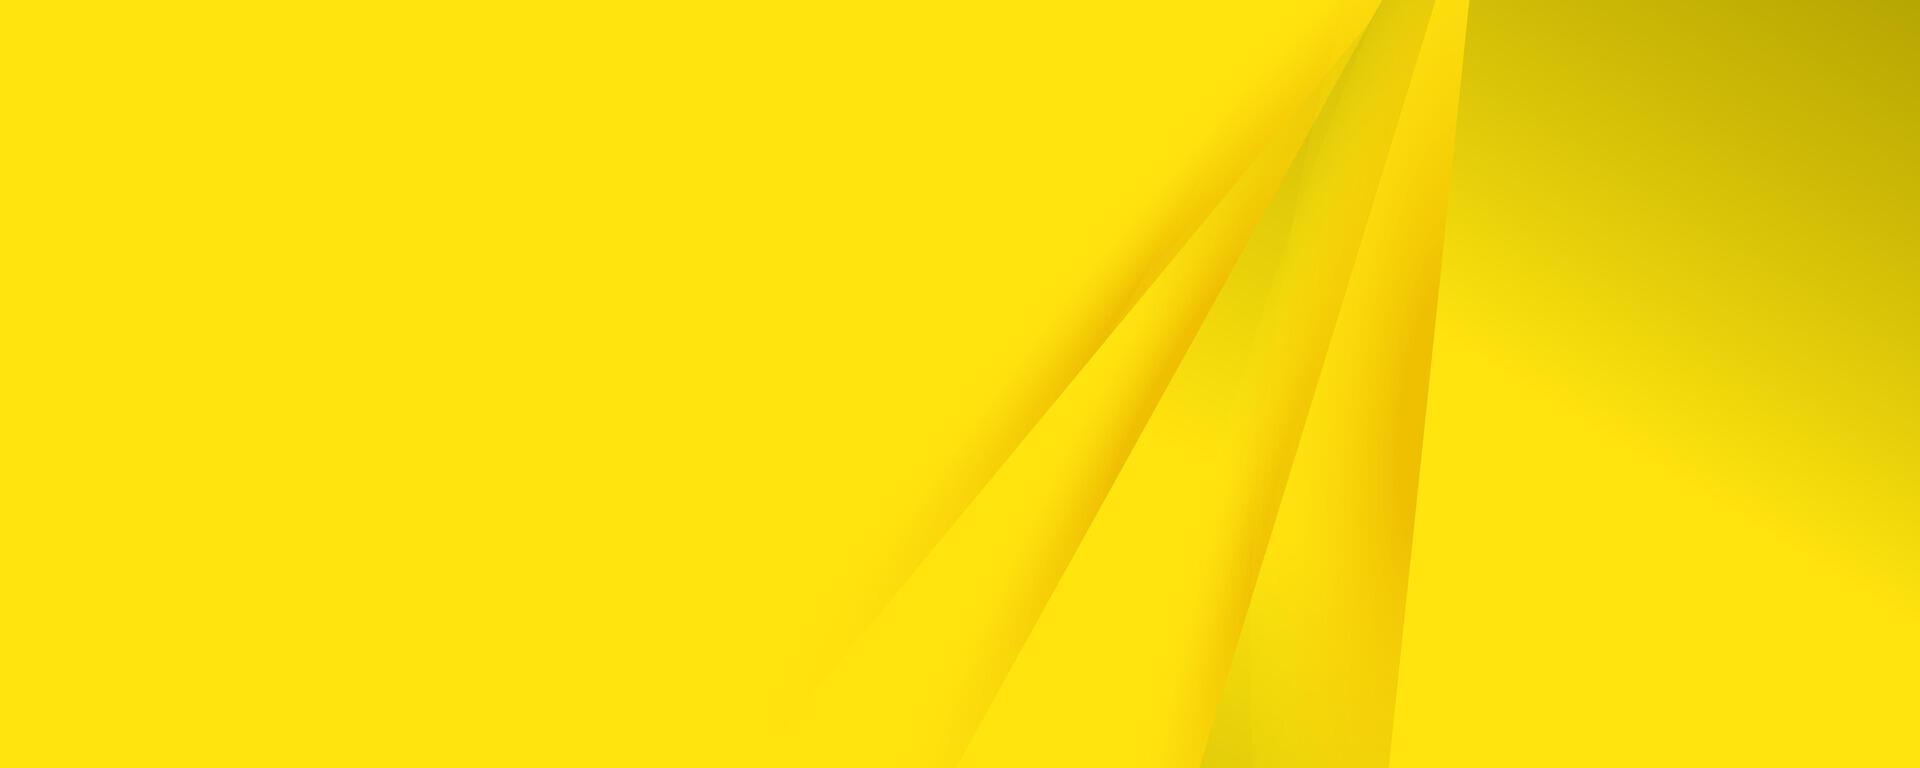 uma amarelo bandeira vetor Projeto. azul e amarelo abstrato fundo moderno hipster futurista vetor ilustração